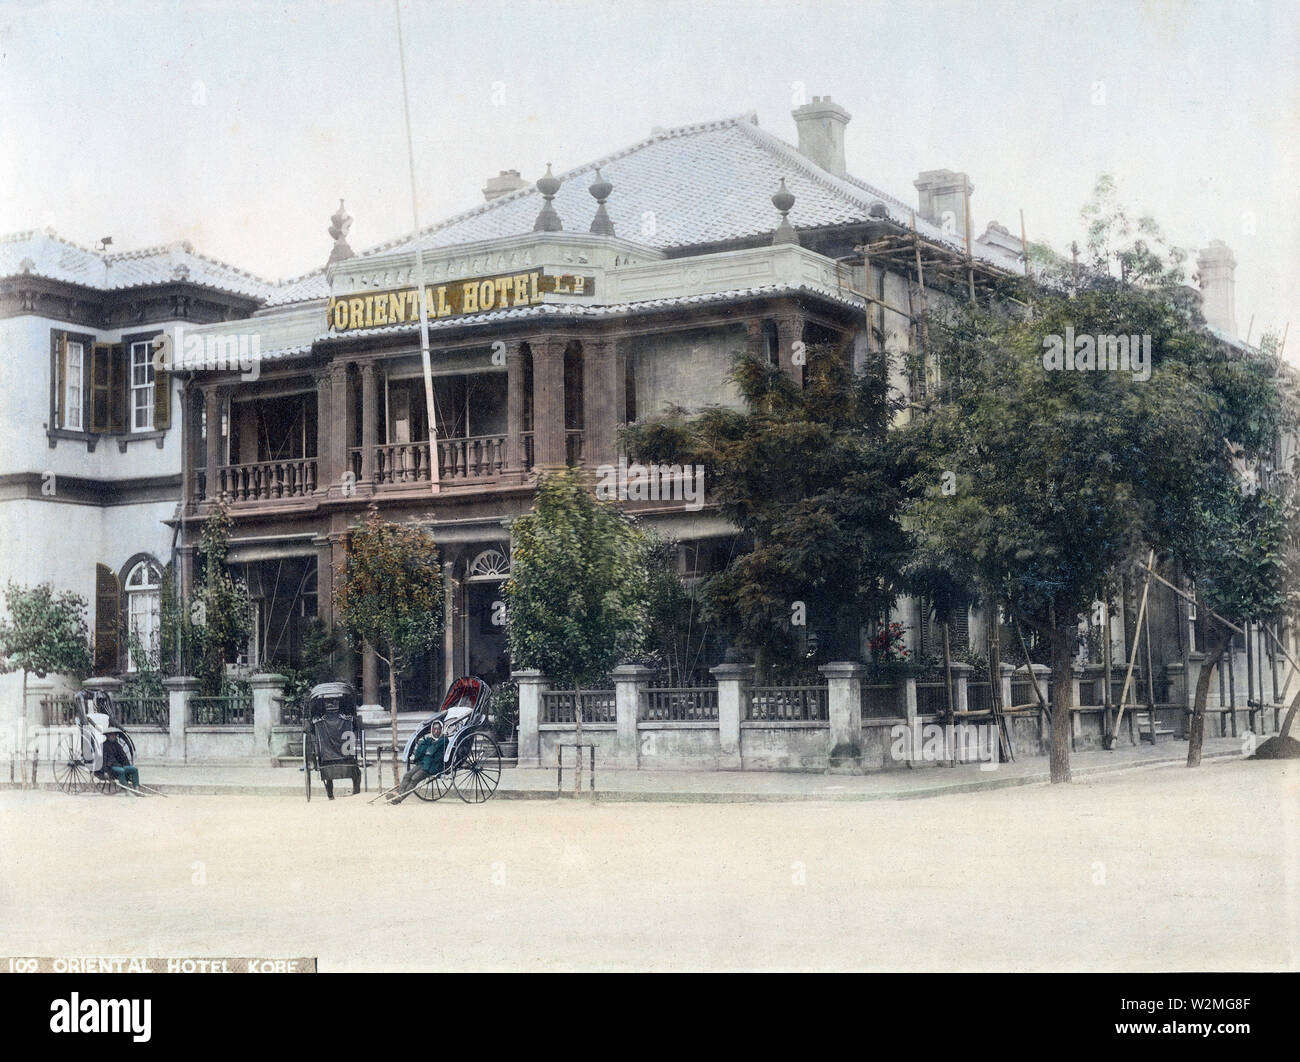 [1880s Japan -] - rikschas vor der ursprünglichen Oriental Hotel an Nr. 80 In der fremden Siedlung in Kobe, Hyogo Präfektur. 19 Vintage albumen Foto. Stockfoto